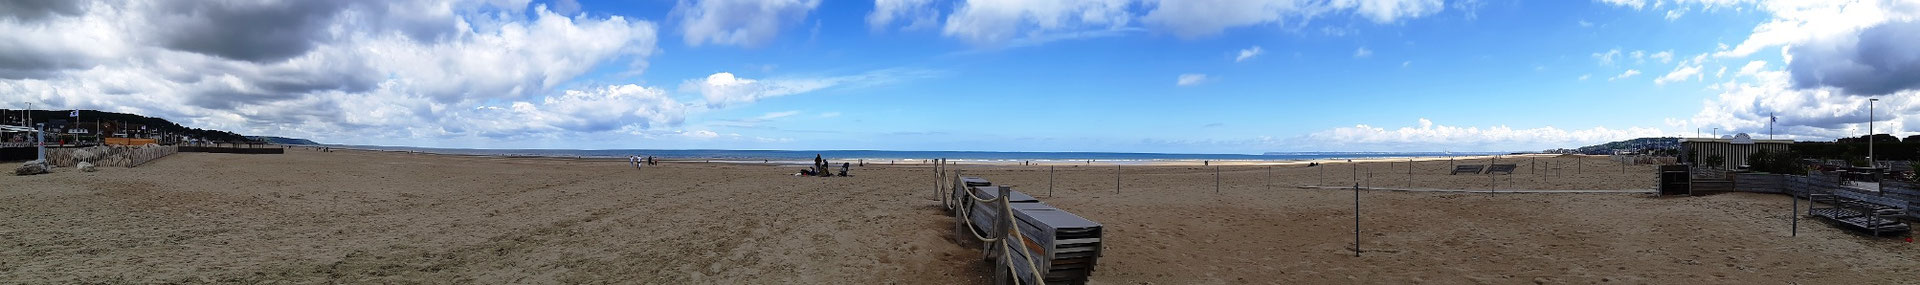 der Strand von Deauville - wegen schlechtem Wetter praktisch leer